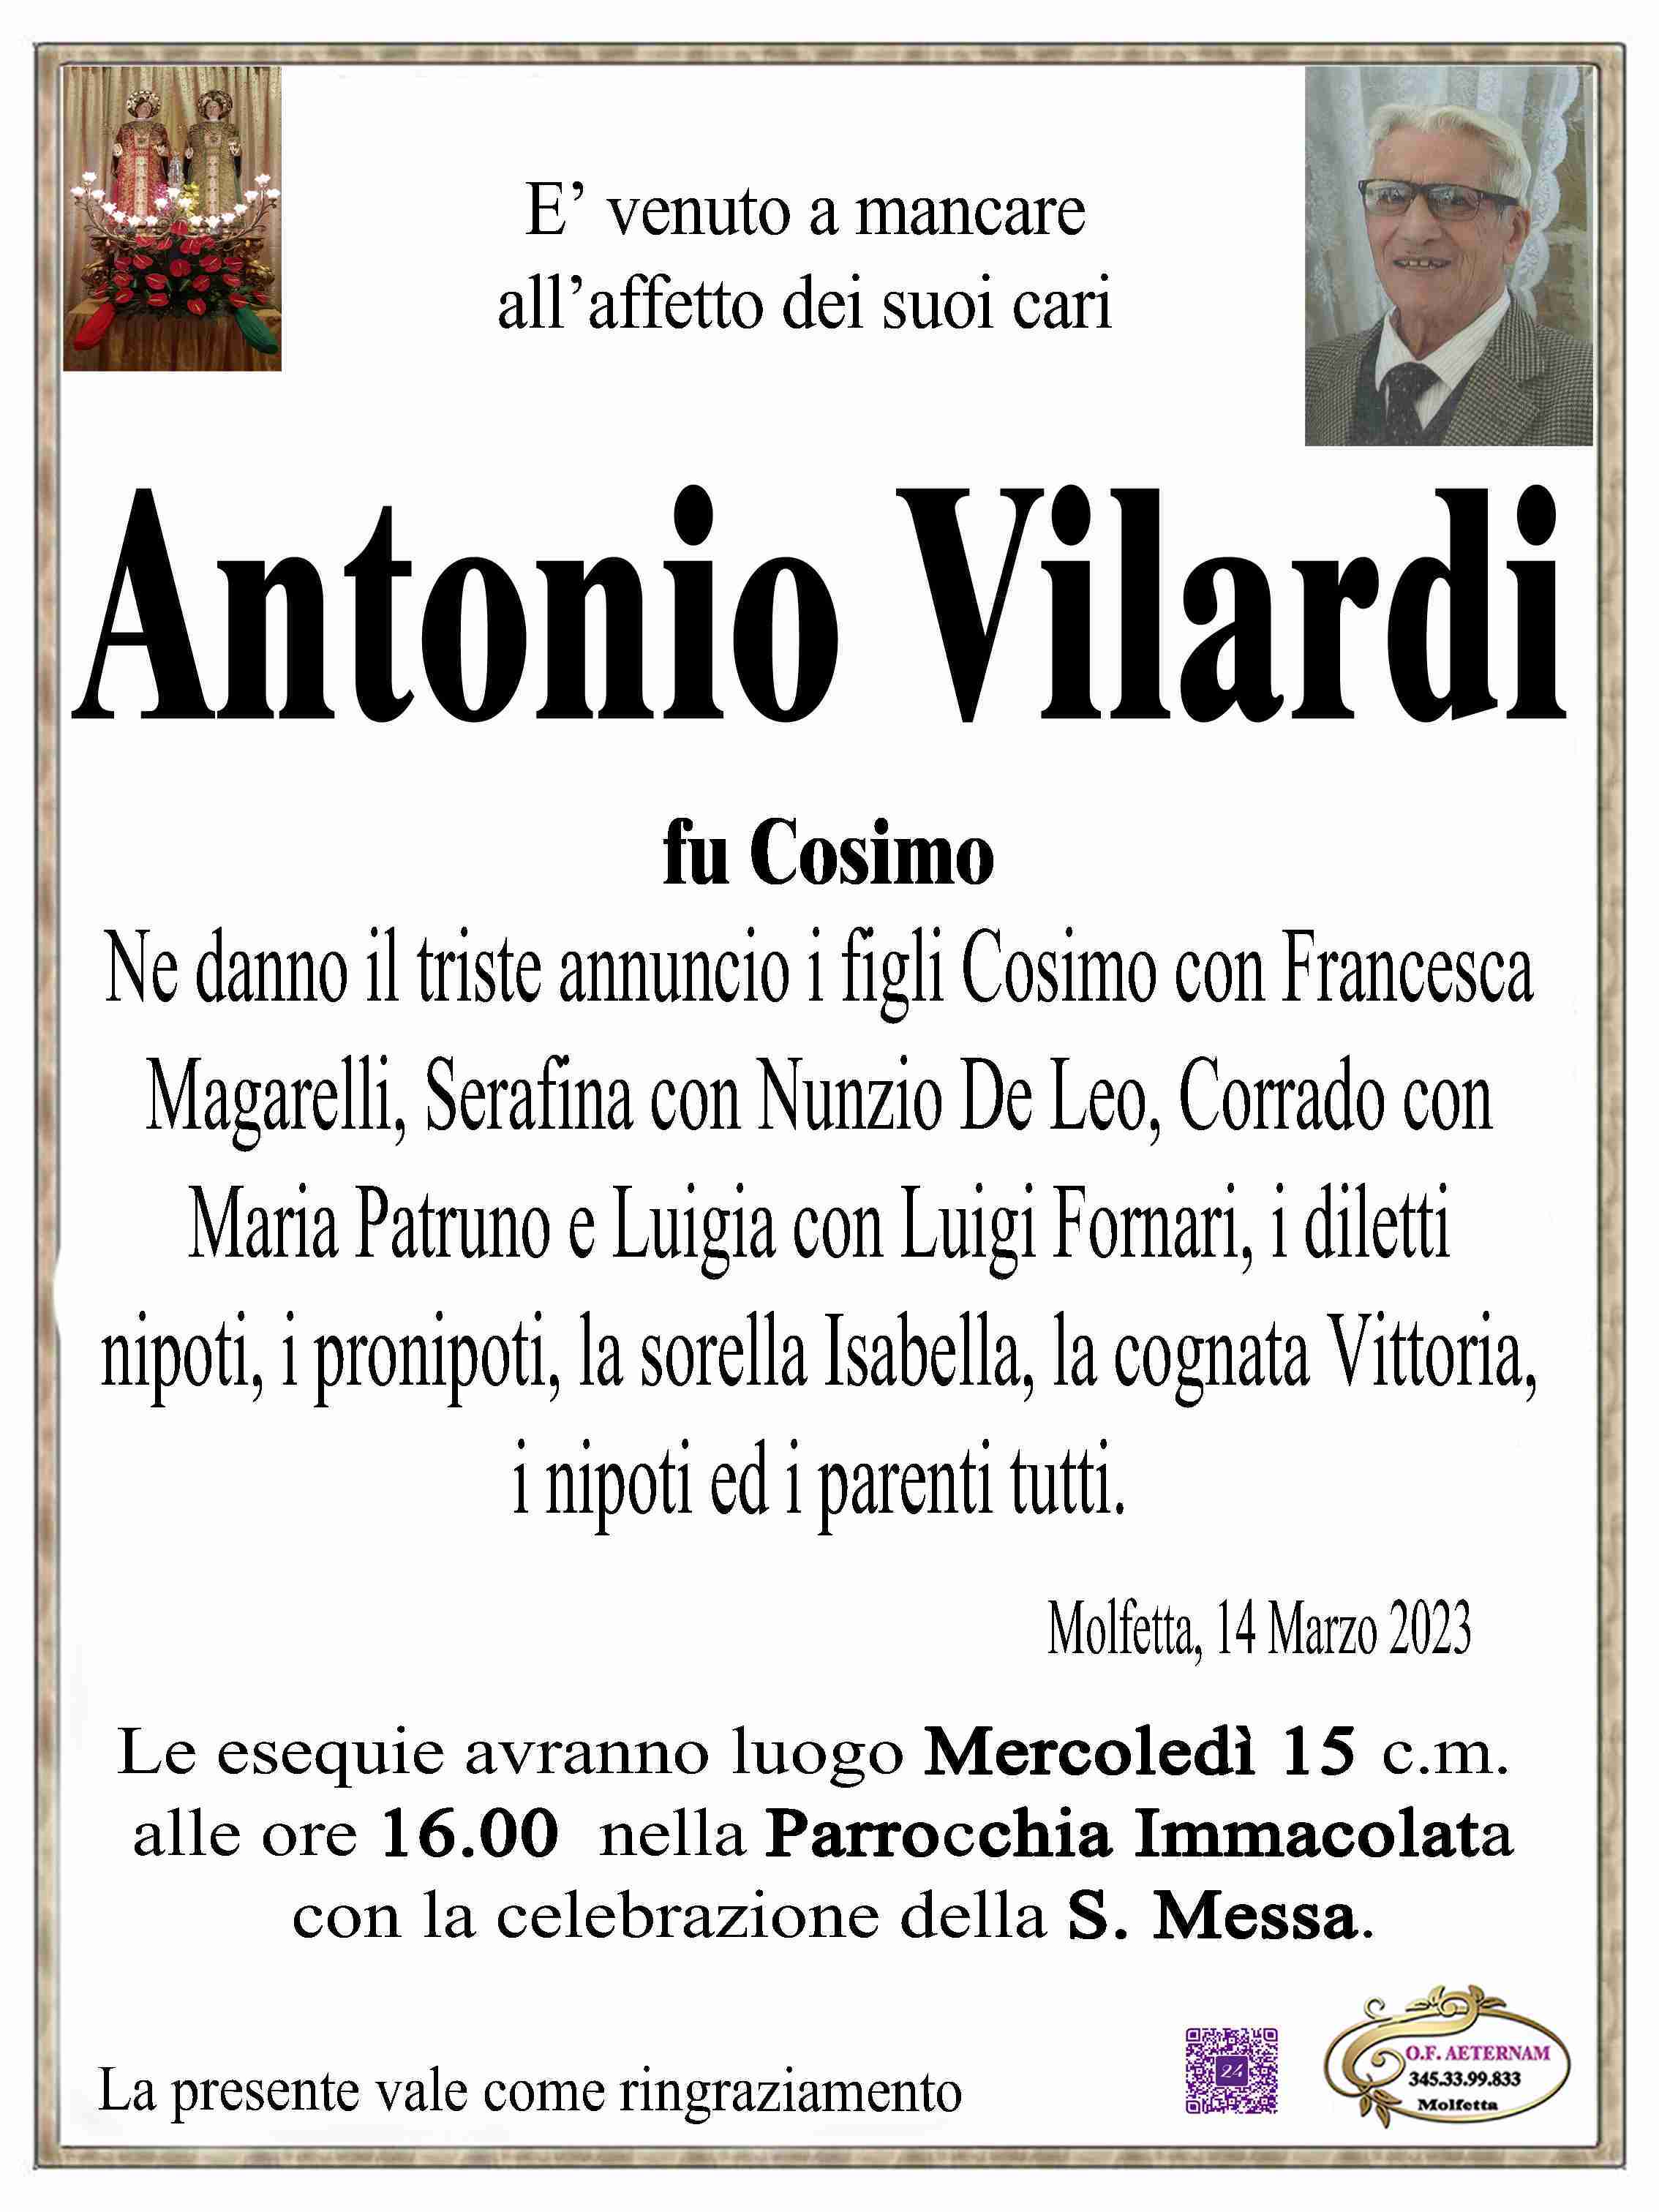 Antonio Vilardi